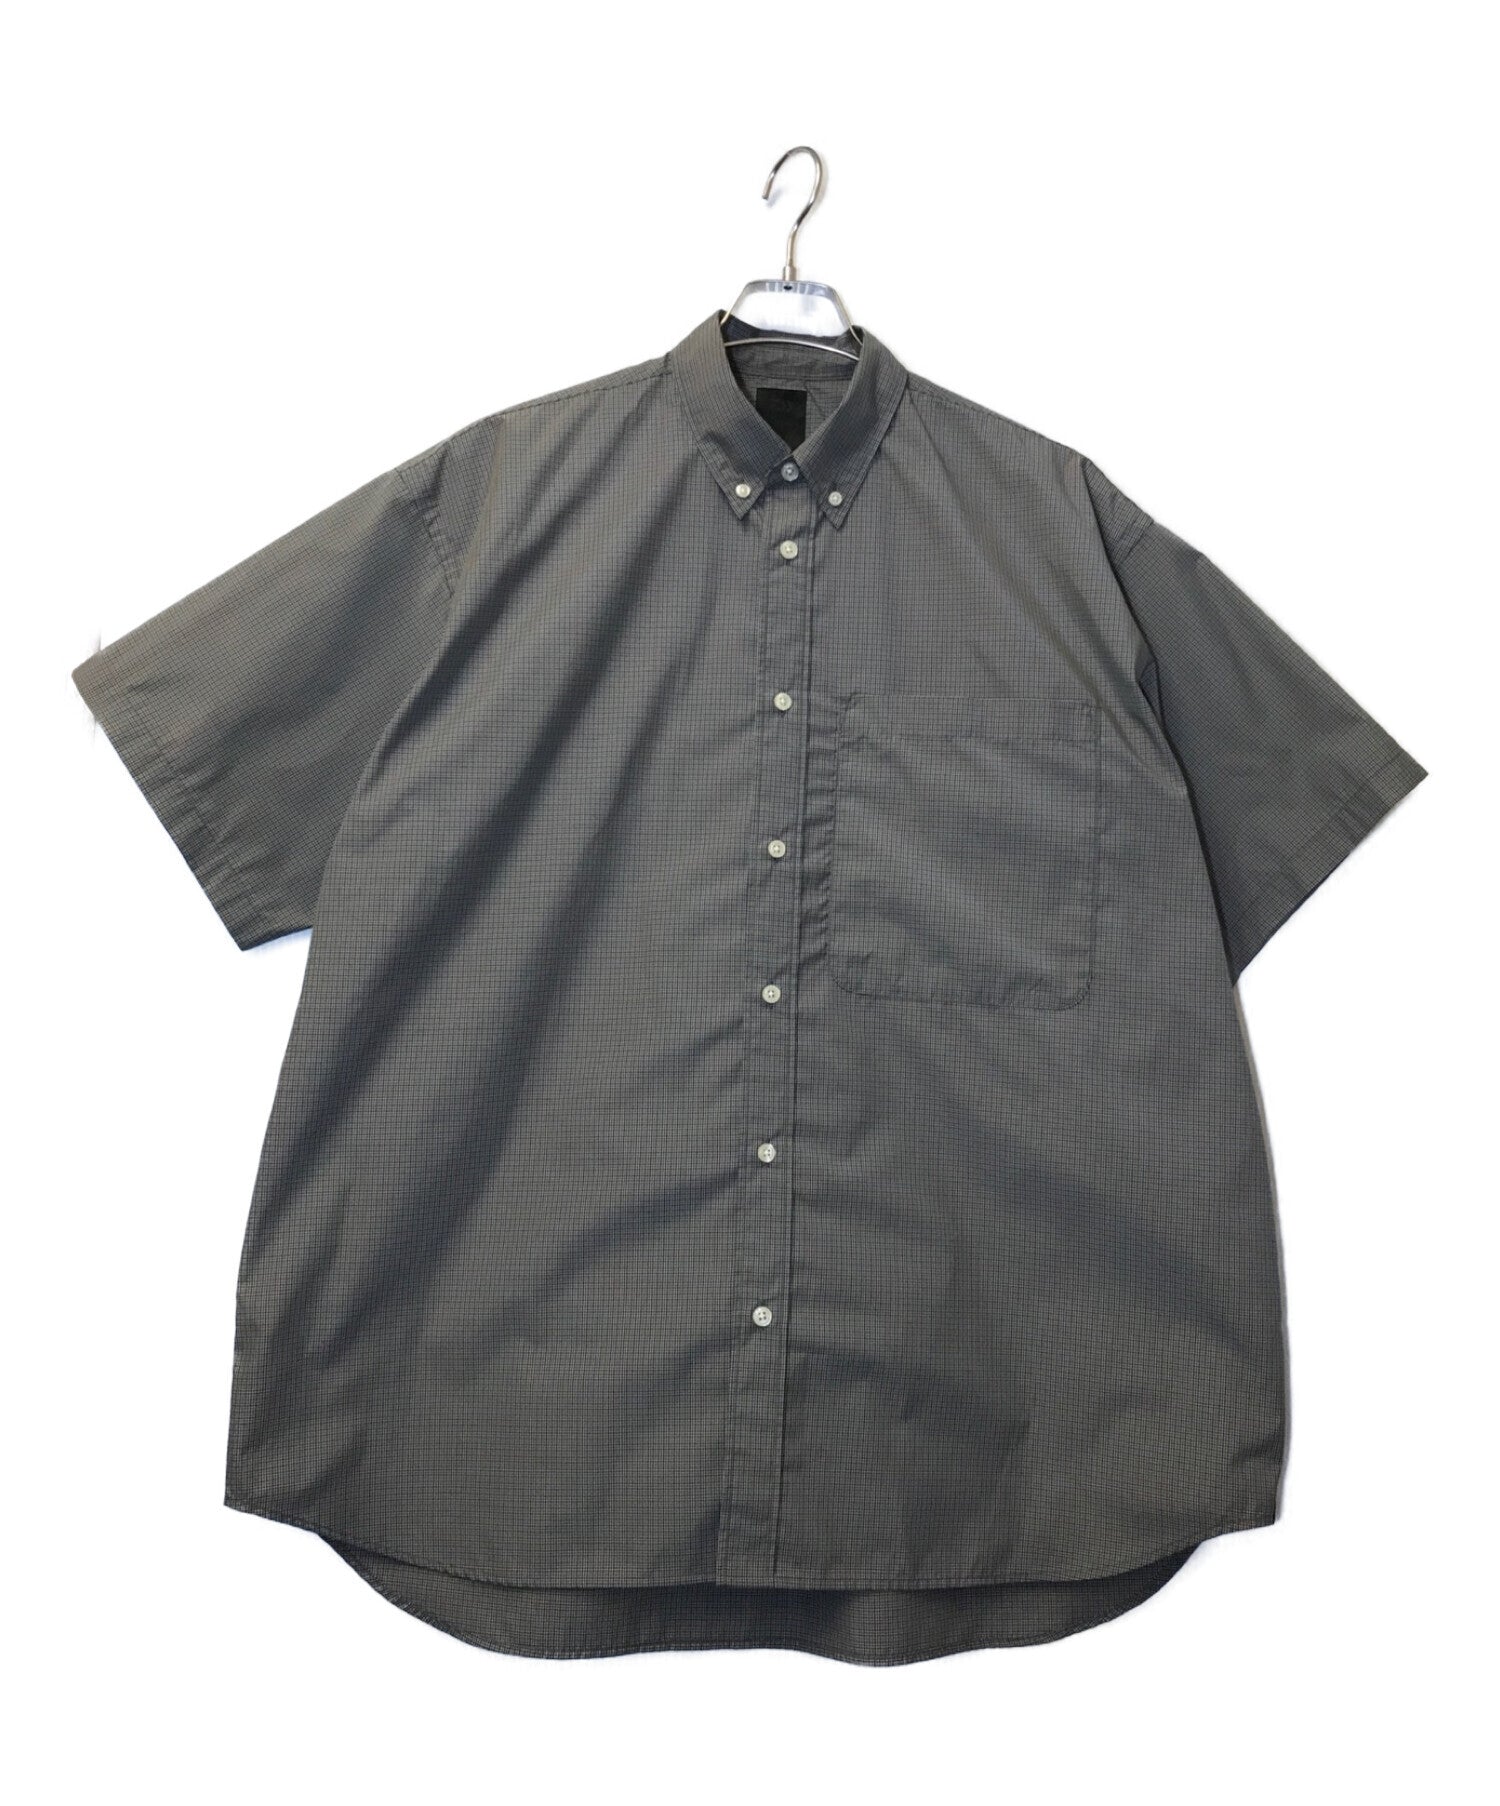 DAIWA PIER39 Tech Regular Collar S/S Shirt Short Sleeve Shirt Shirt BE